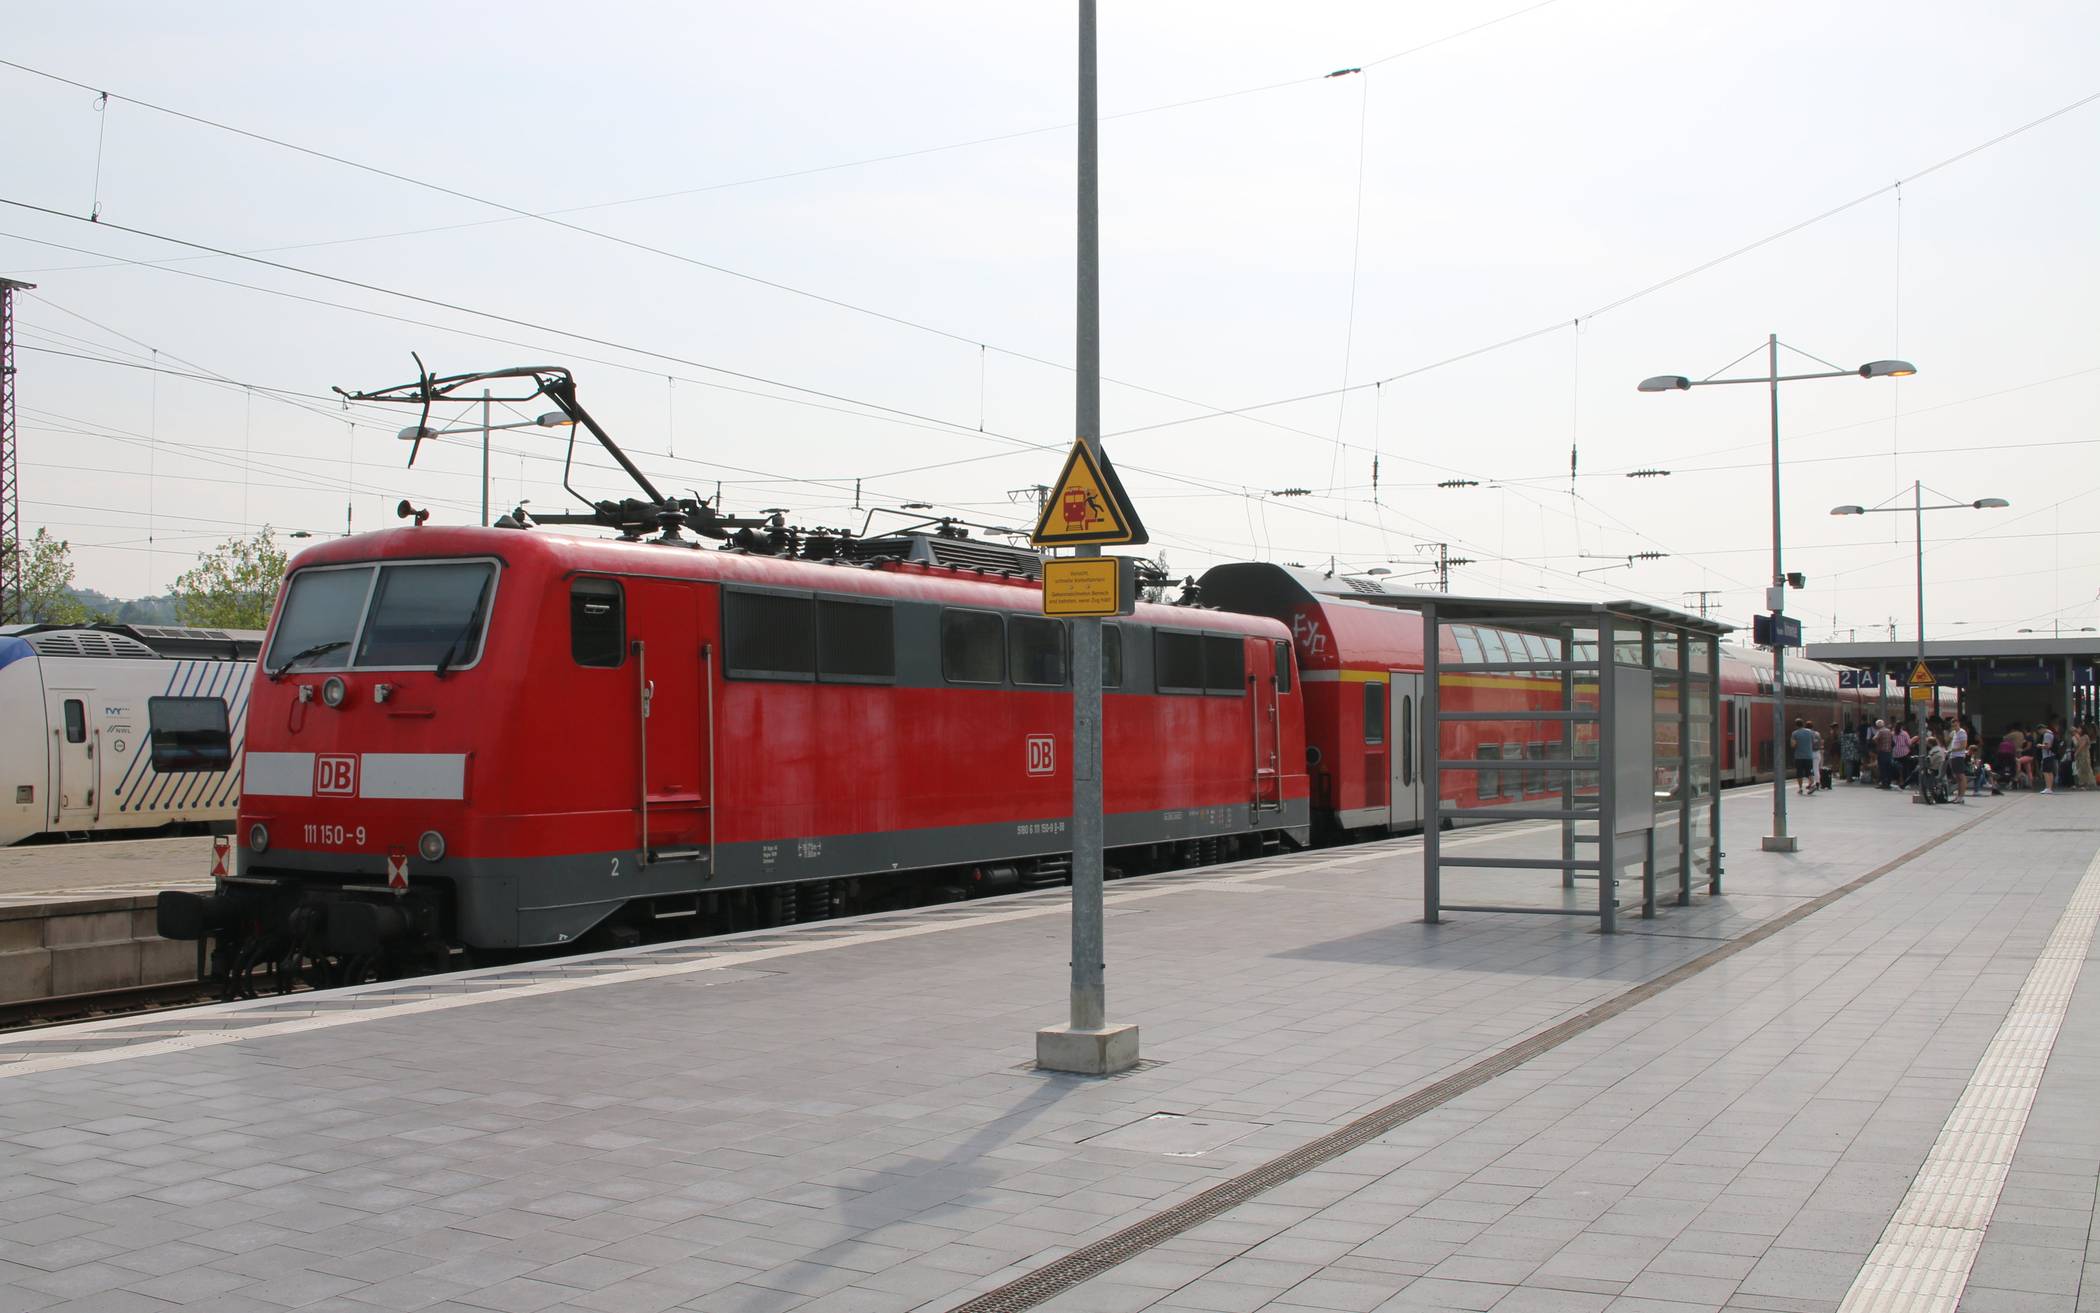  Der Bahnhof in Wuppertal-Vohwinkel.  